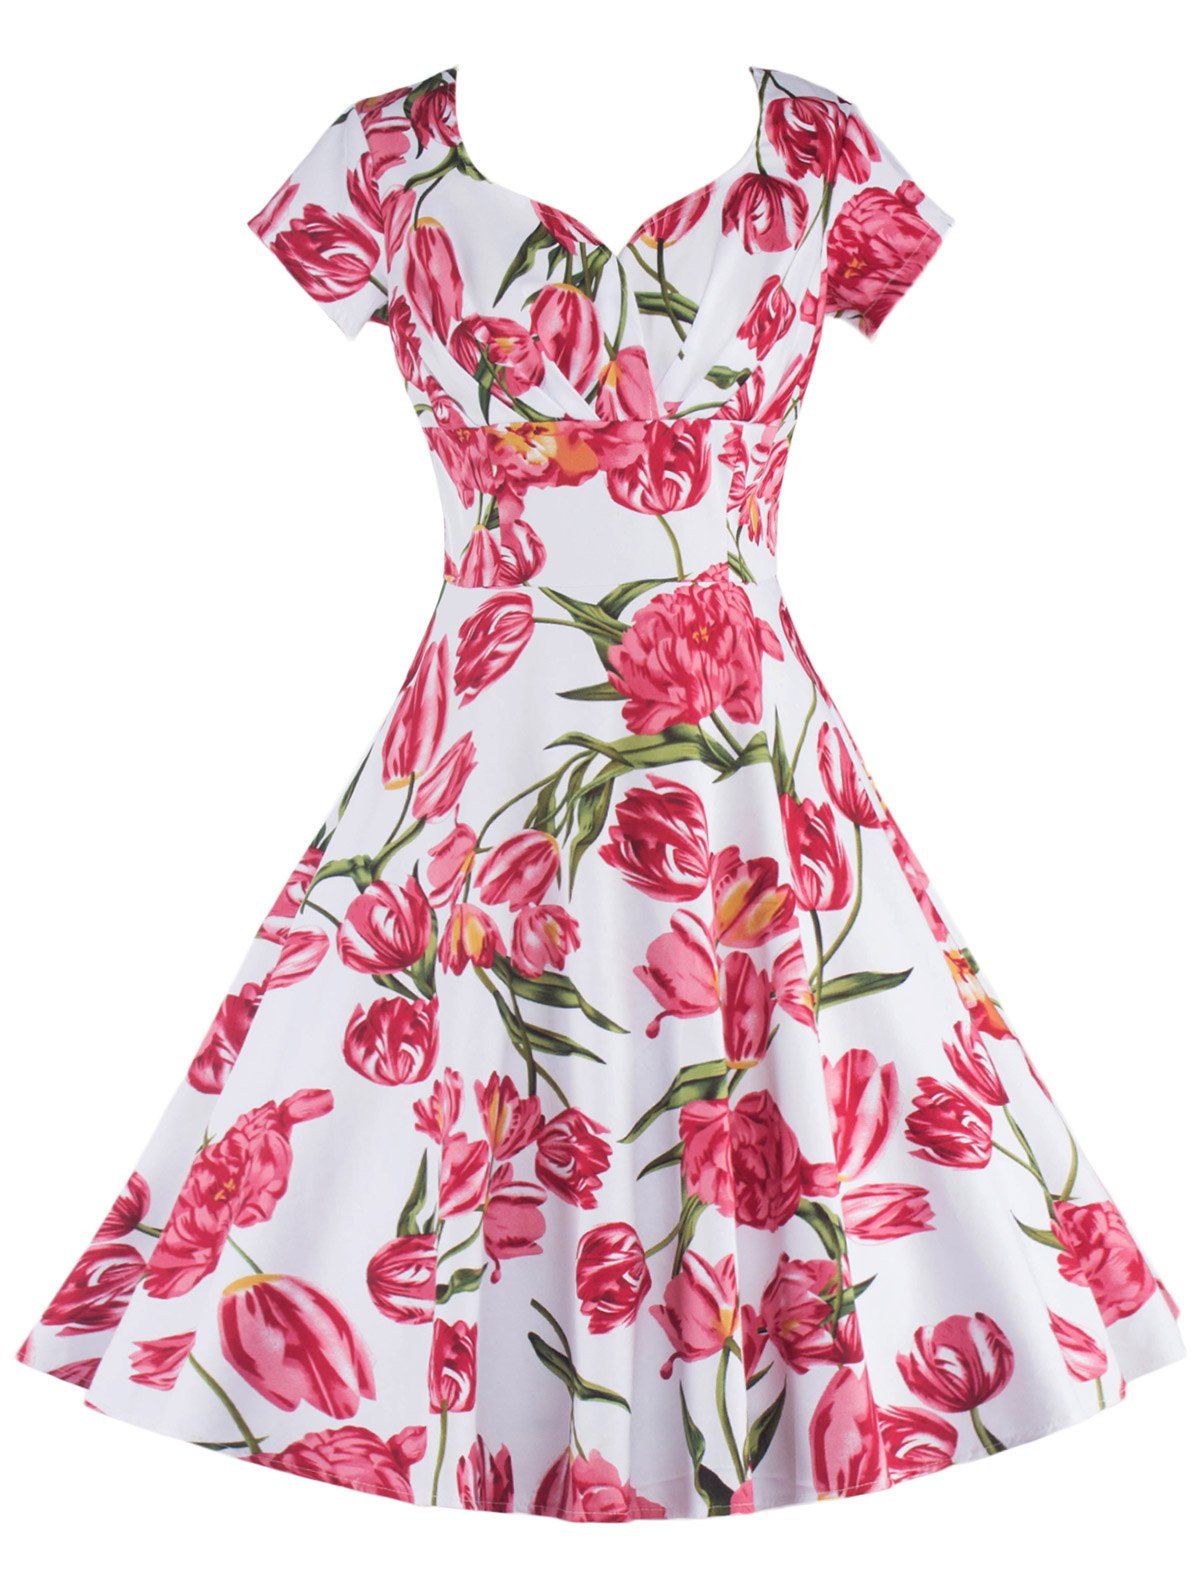 [17% OFF] 2020 Vintage Short Sleeves Floral Flare Cocktail Dress In ...